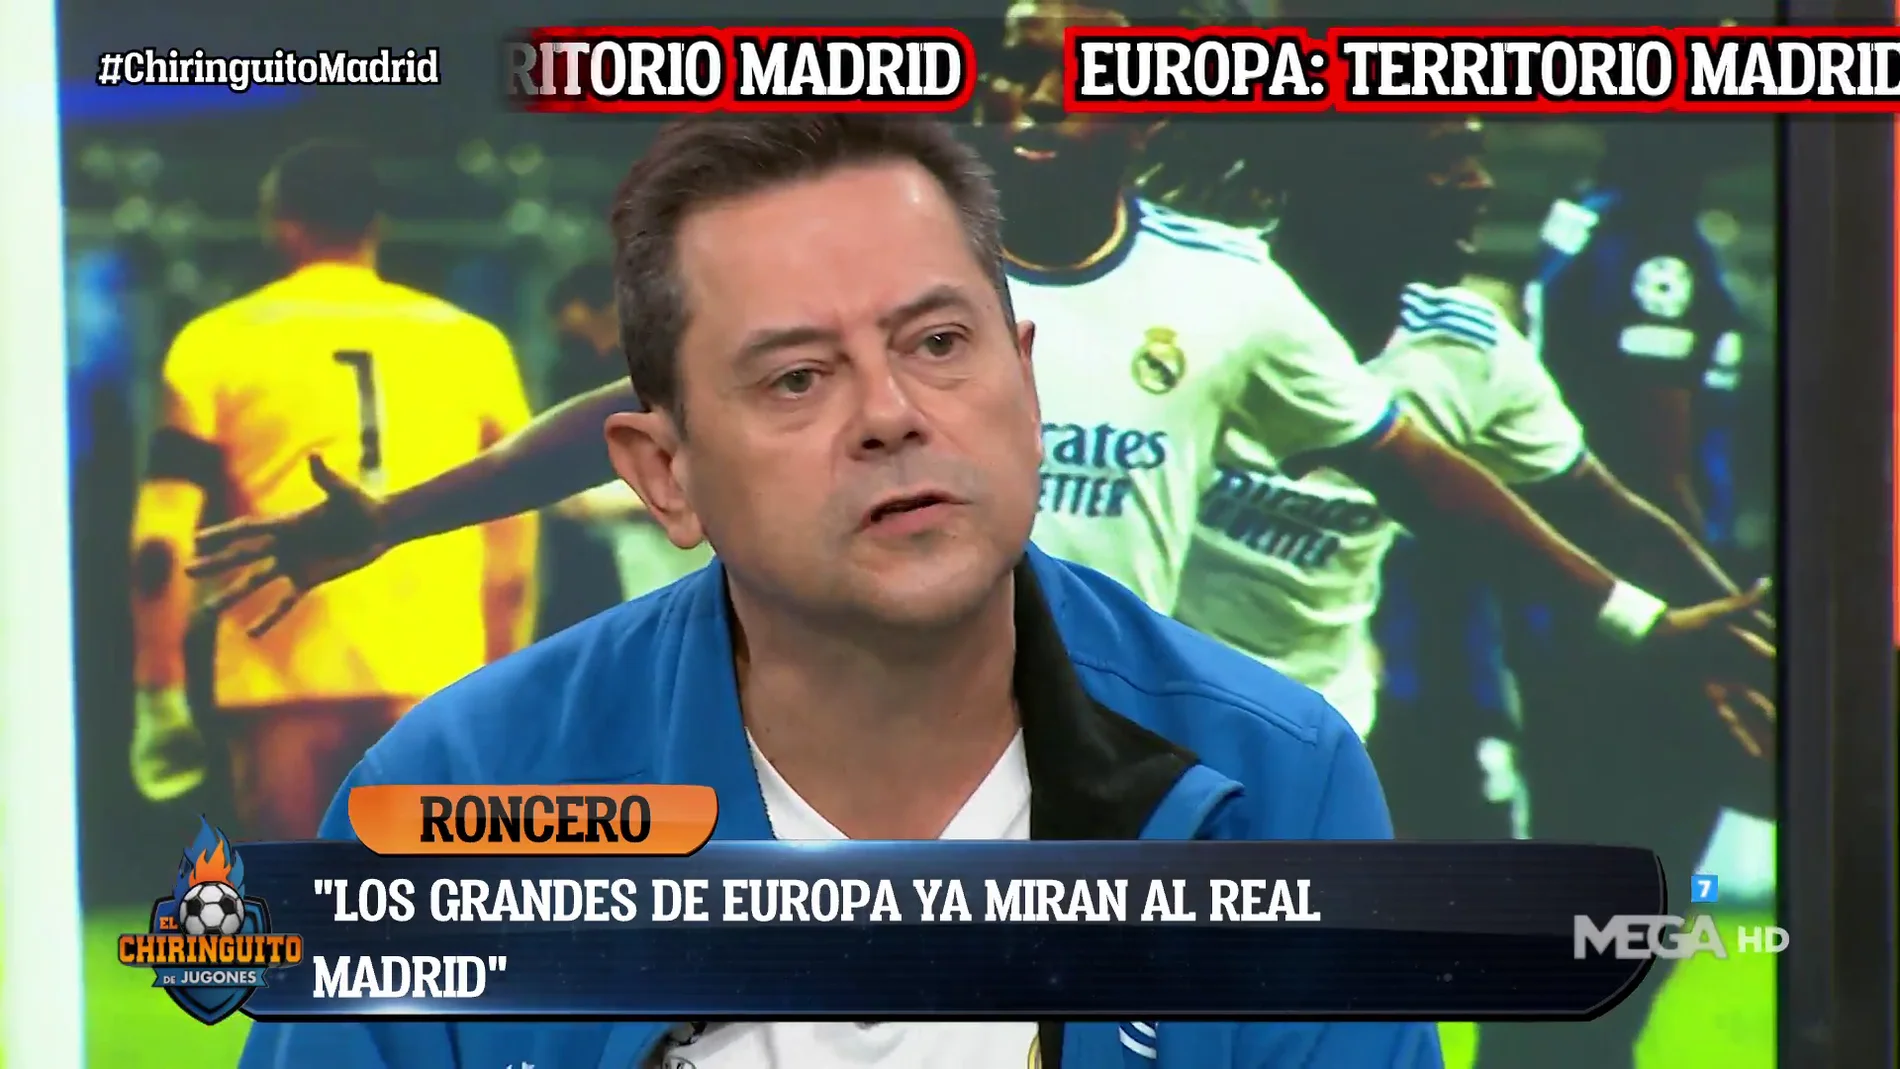 "LOS GRANDES DE EUROPA MIRAN AL REAL MADRID"